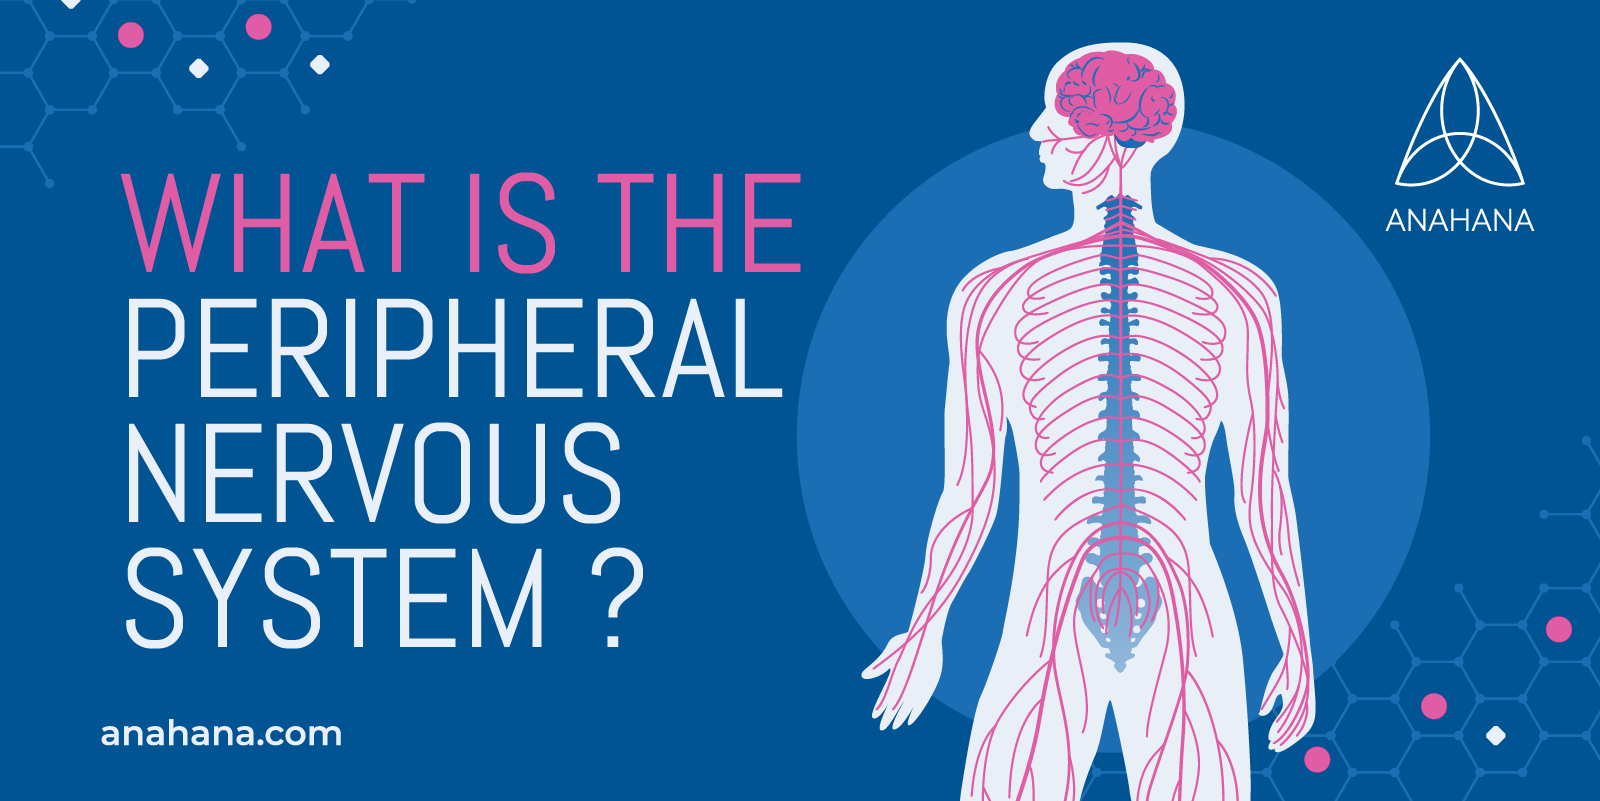 Qu'est-ce que le système nerveux périphérique